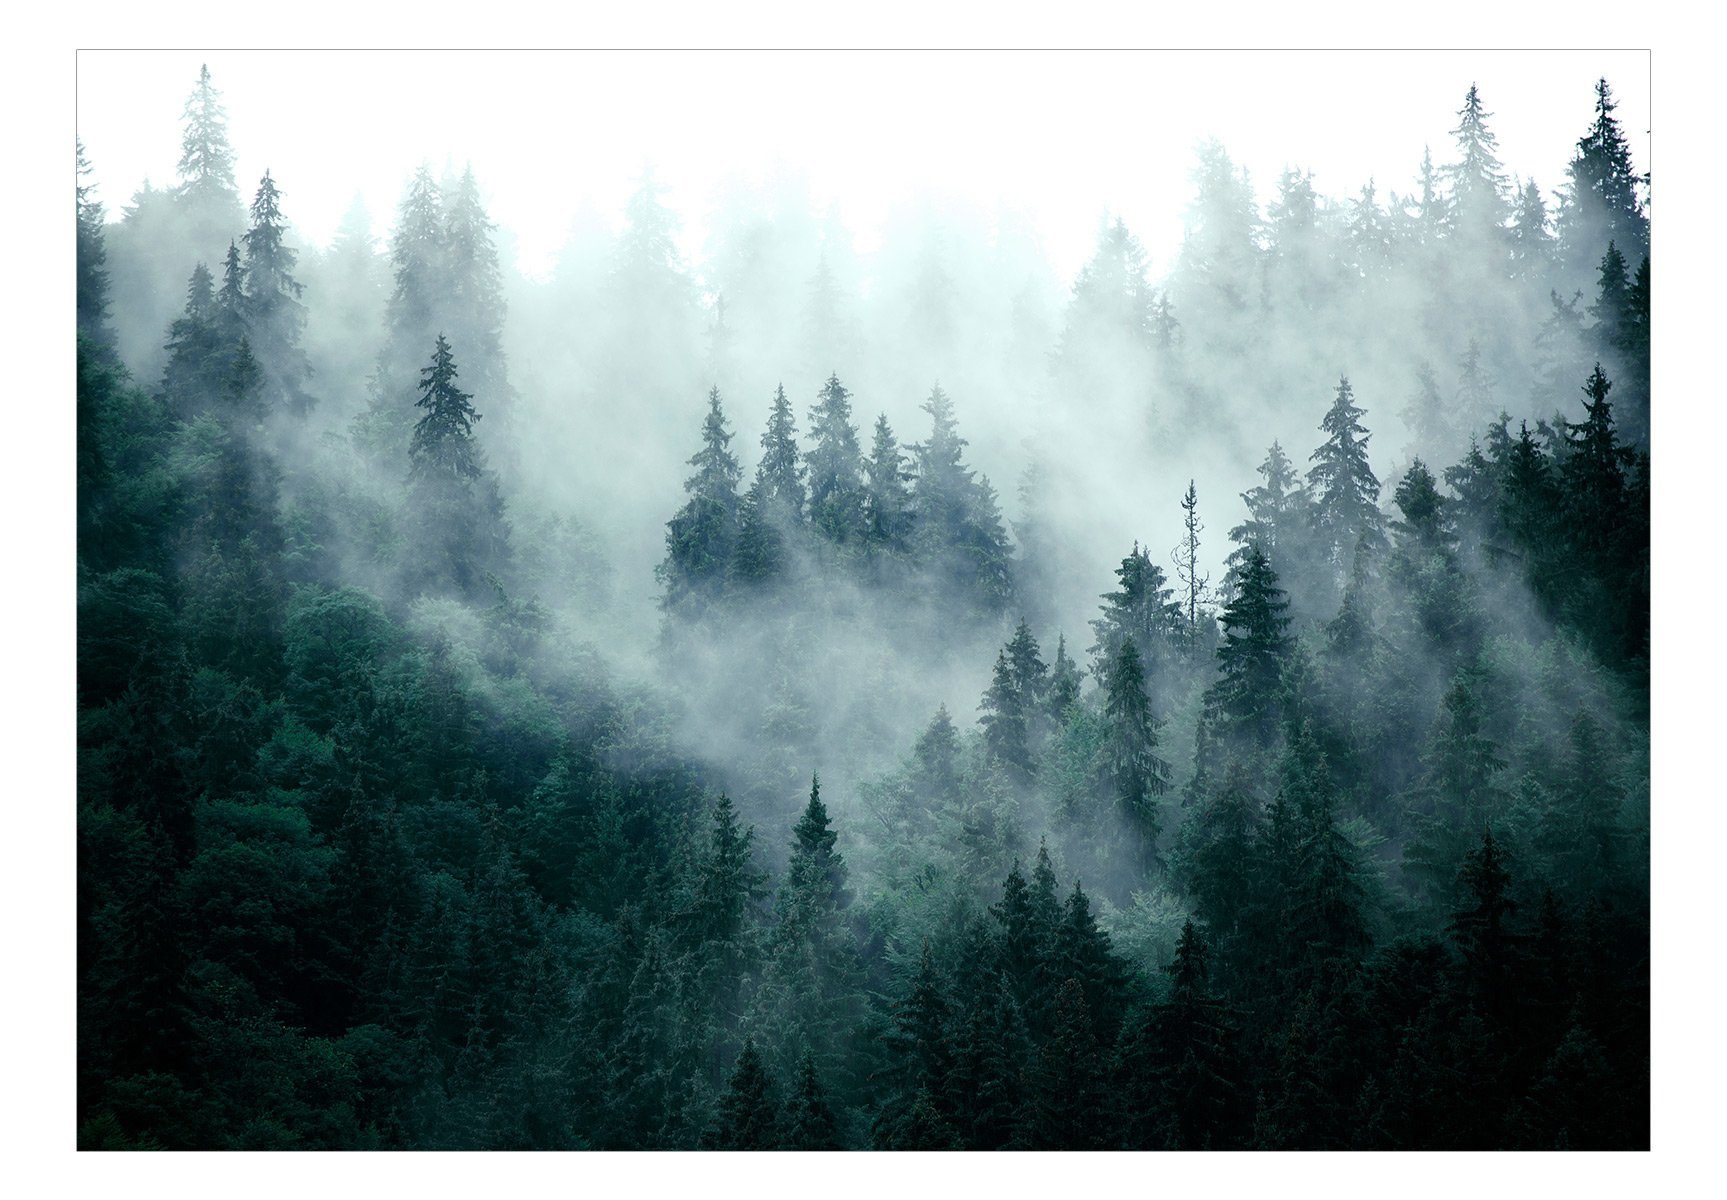 Forest lichtbeständige Design m, 0.98x0.7 halb-matt, Green) matt, KUNSTLOFT Tapete Vliestapete (Dark Mountain